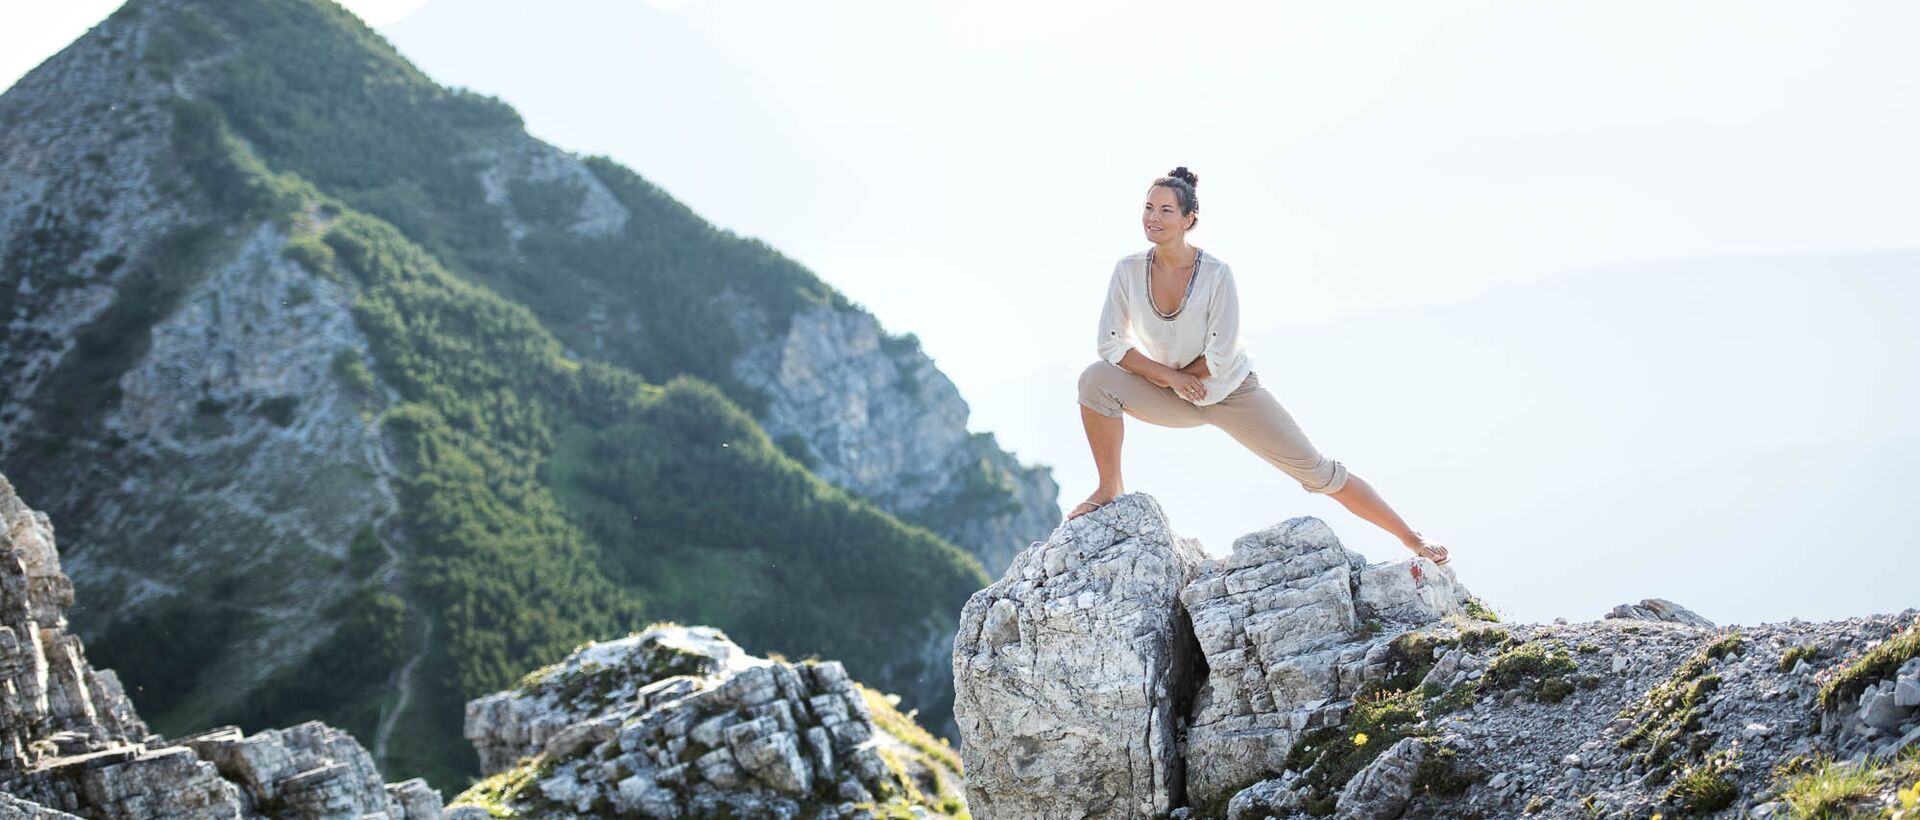 Yoga am Berg | Beste Wellnesshotels in Südtirol & Österreich